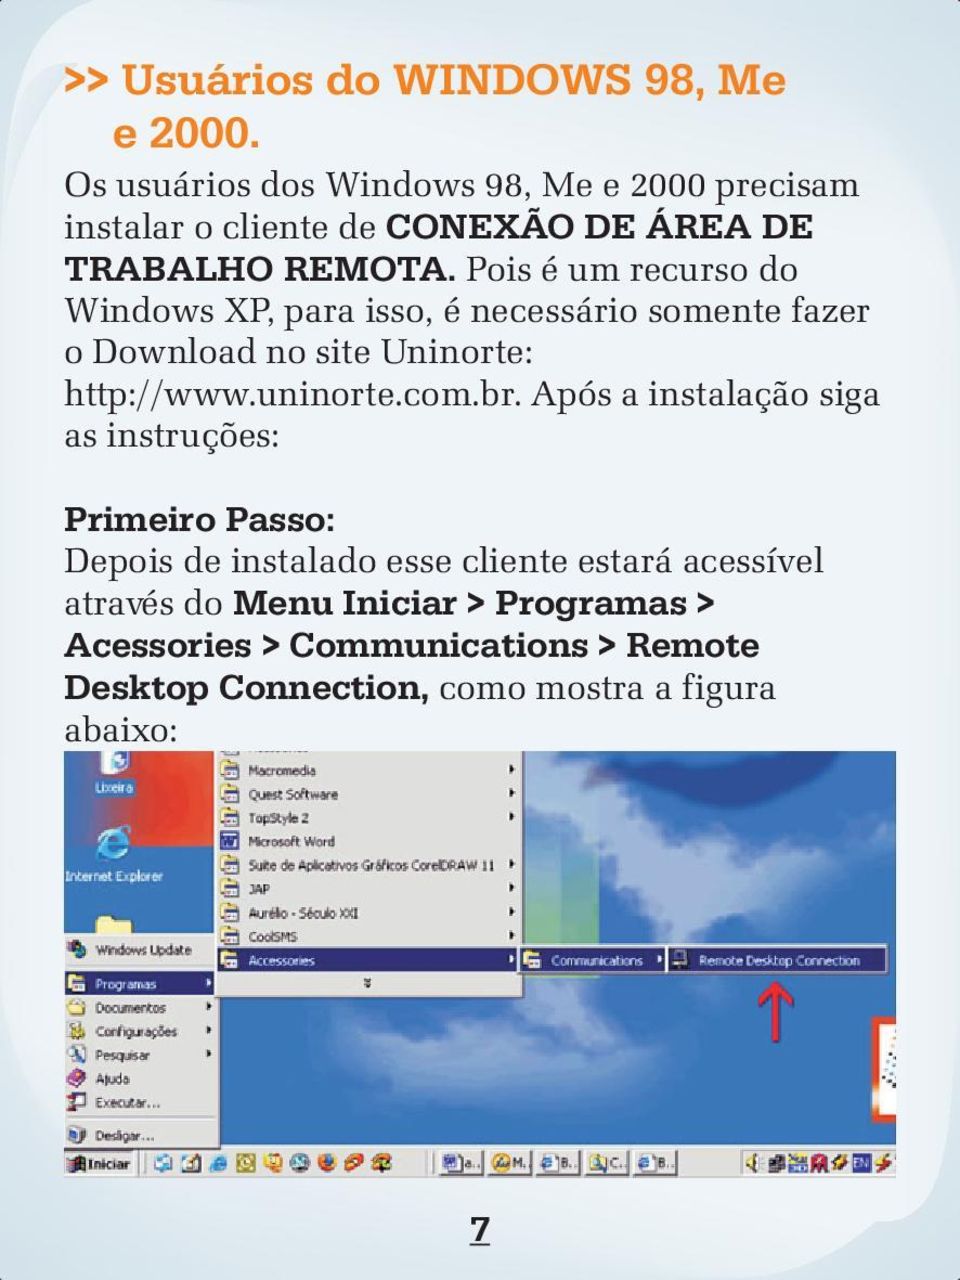 Pois é um recurso do Windows XP, para isso, é necessário somente fazer o Download no site Uninorte: http://www.uninorte.com.